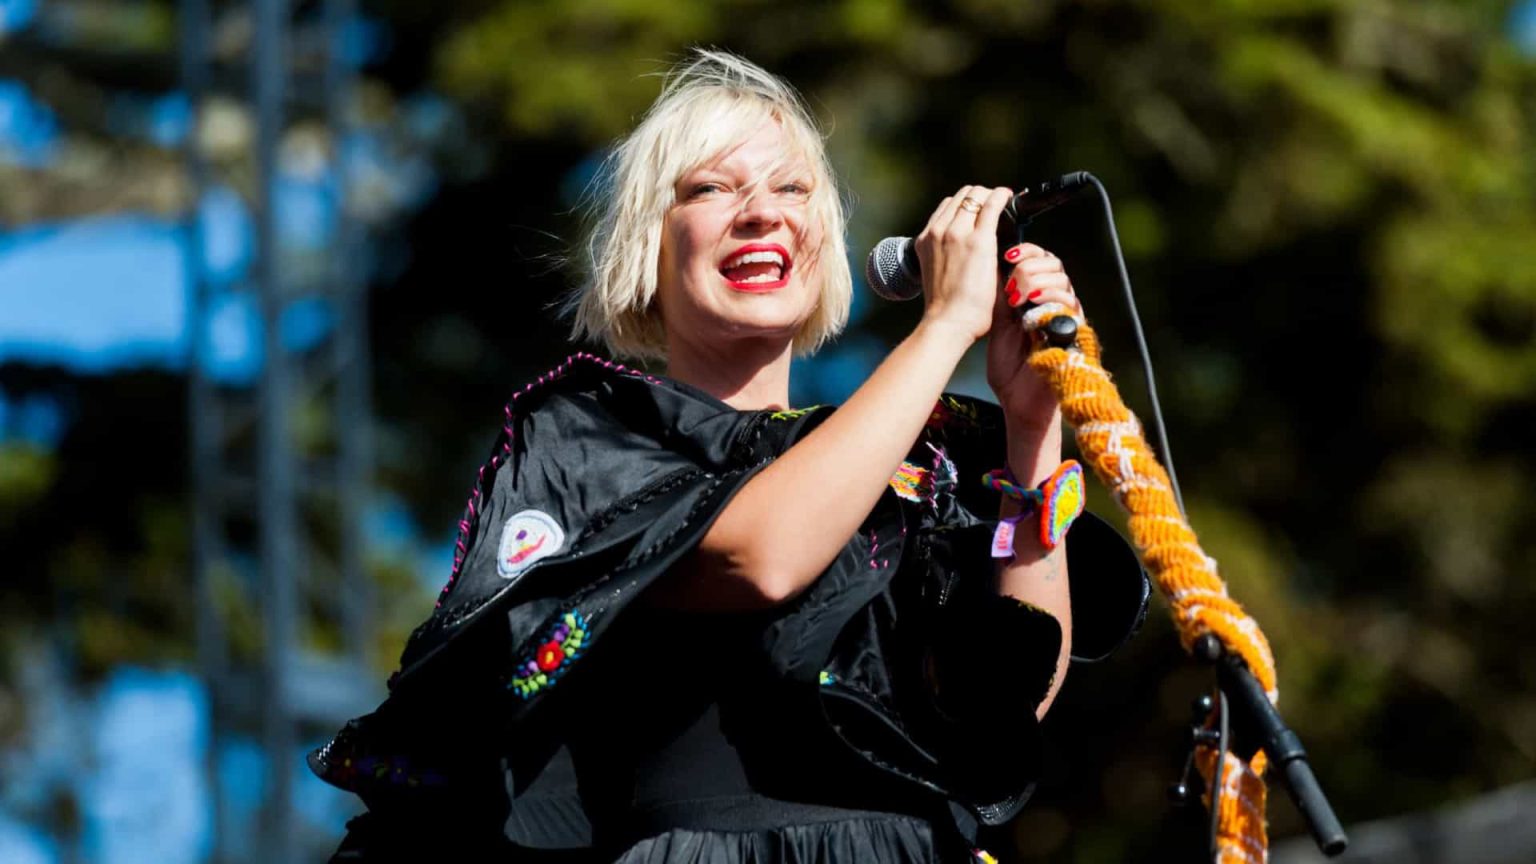 Sia diz ter tido pensamentos suicidas e recaída após sofrer críticas por filme